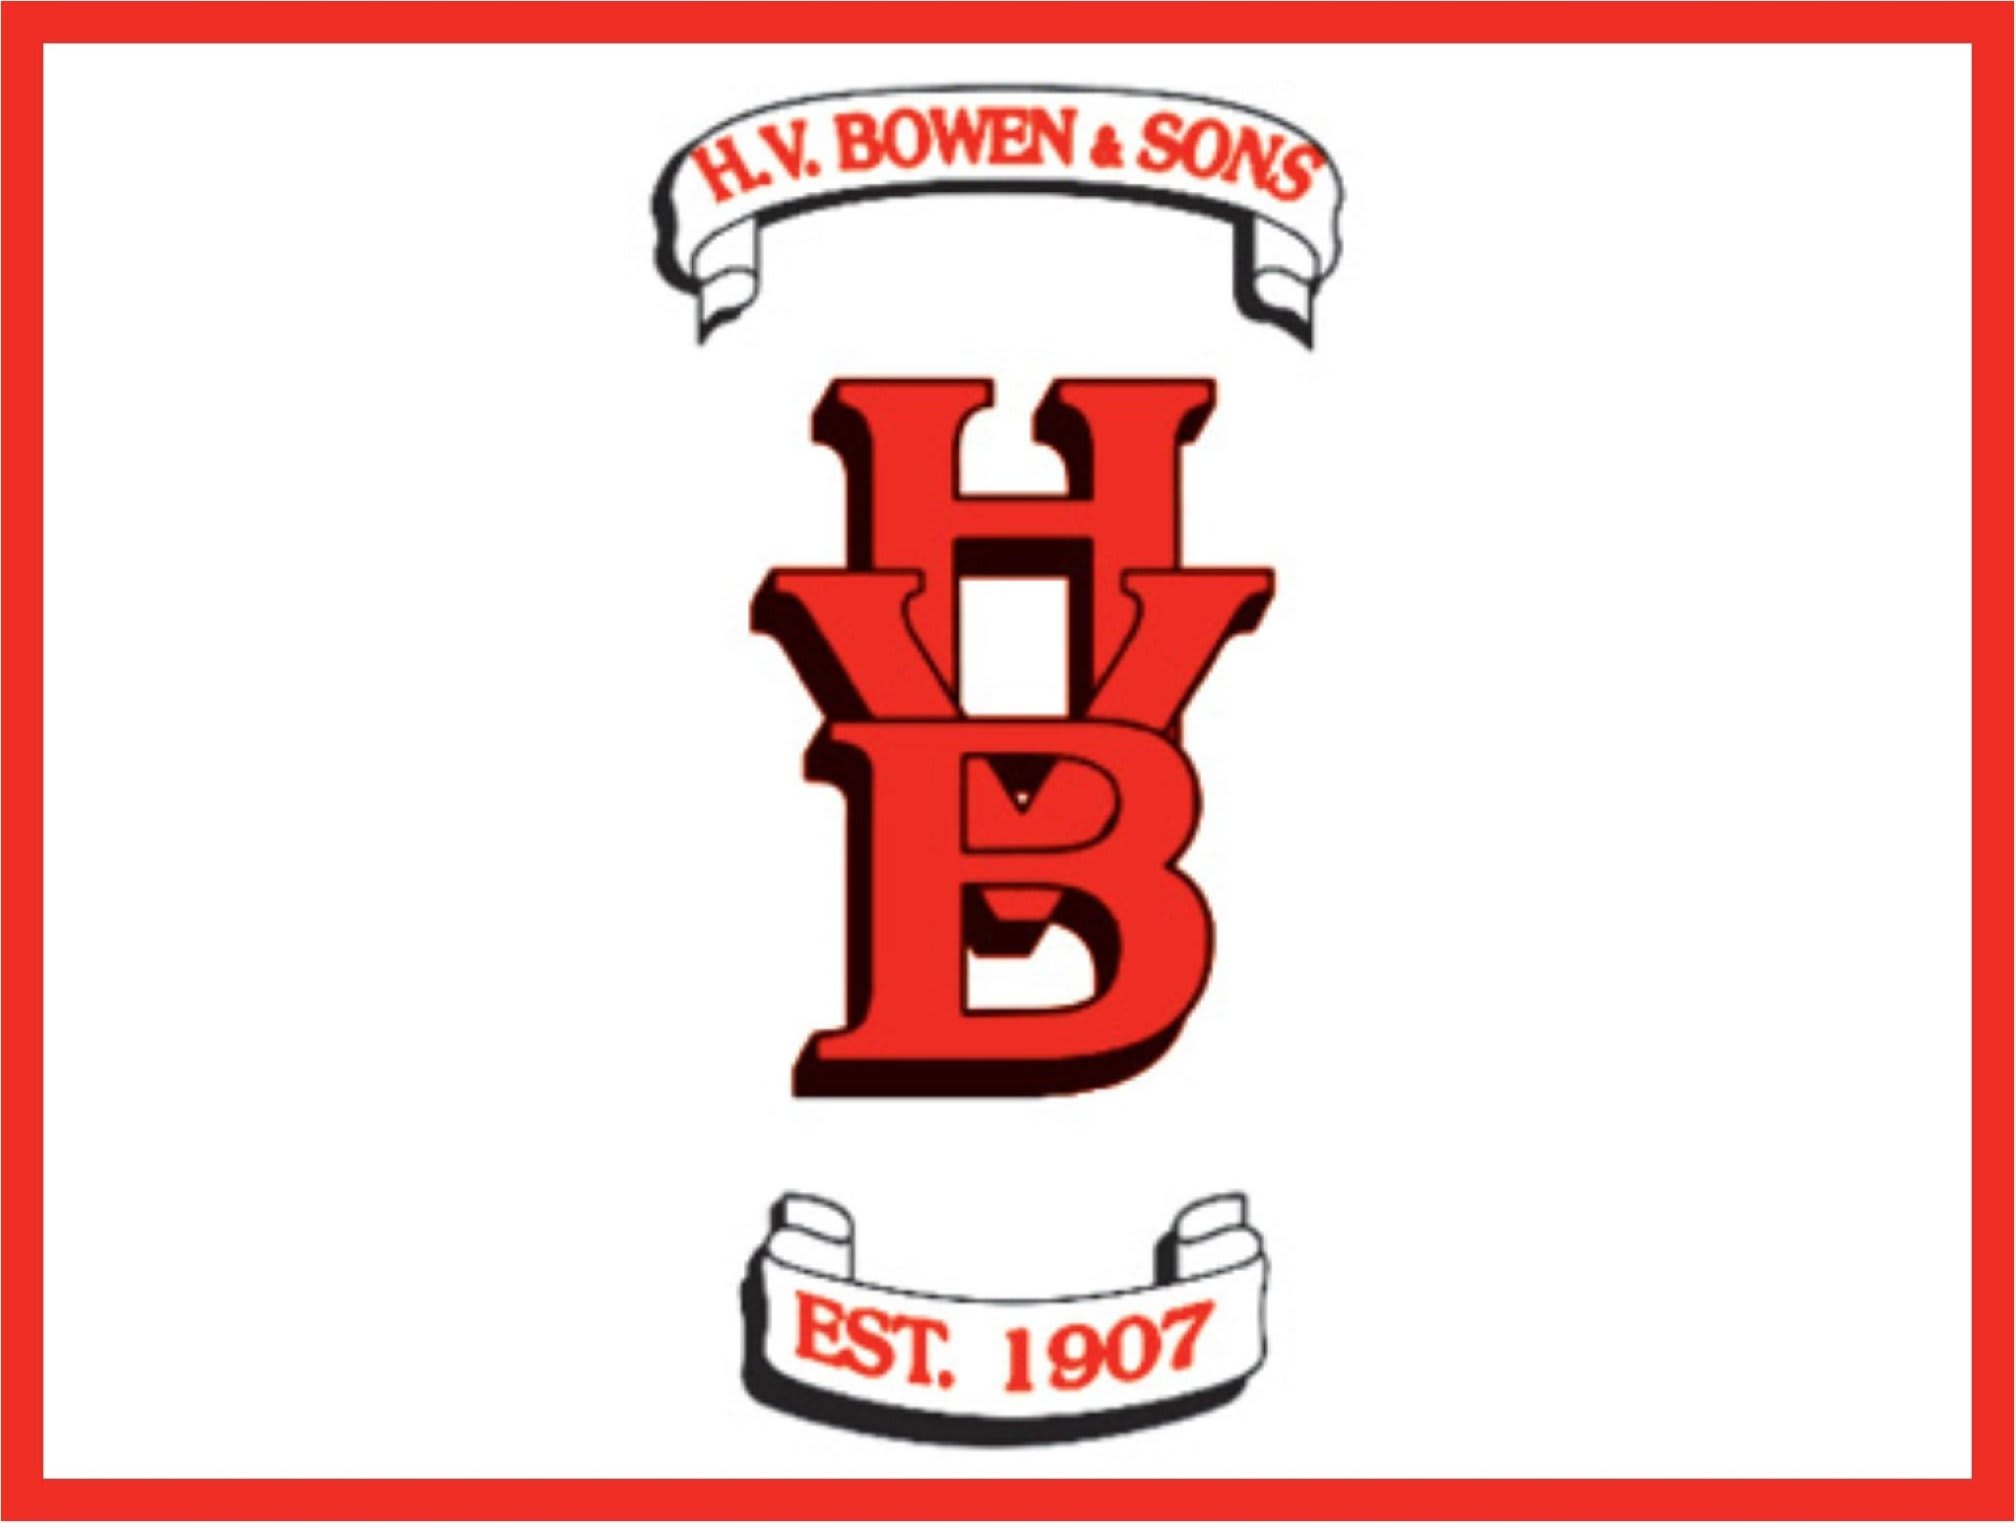 Images H V Bowen & Sons